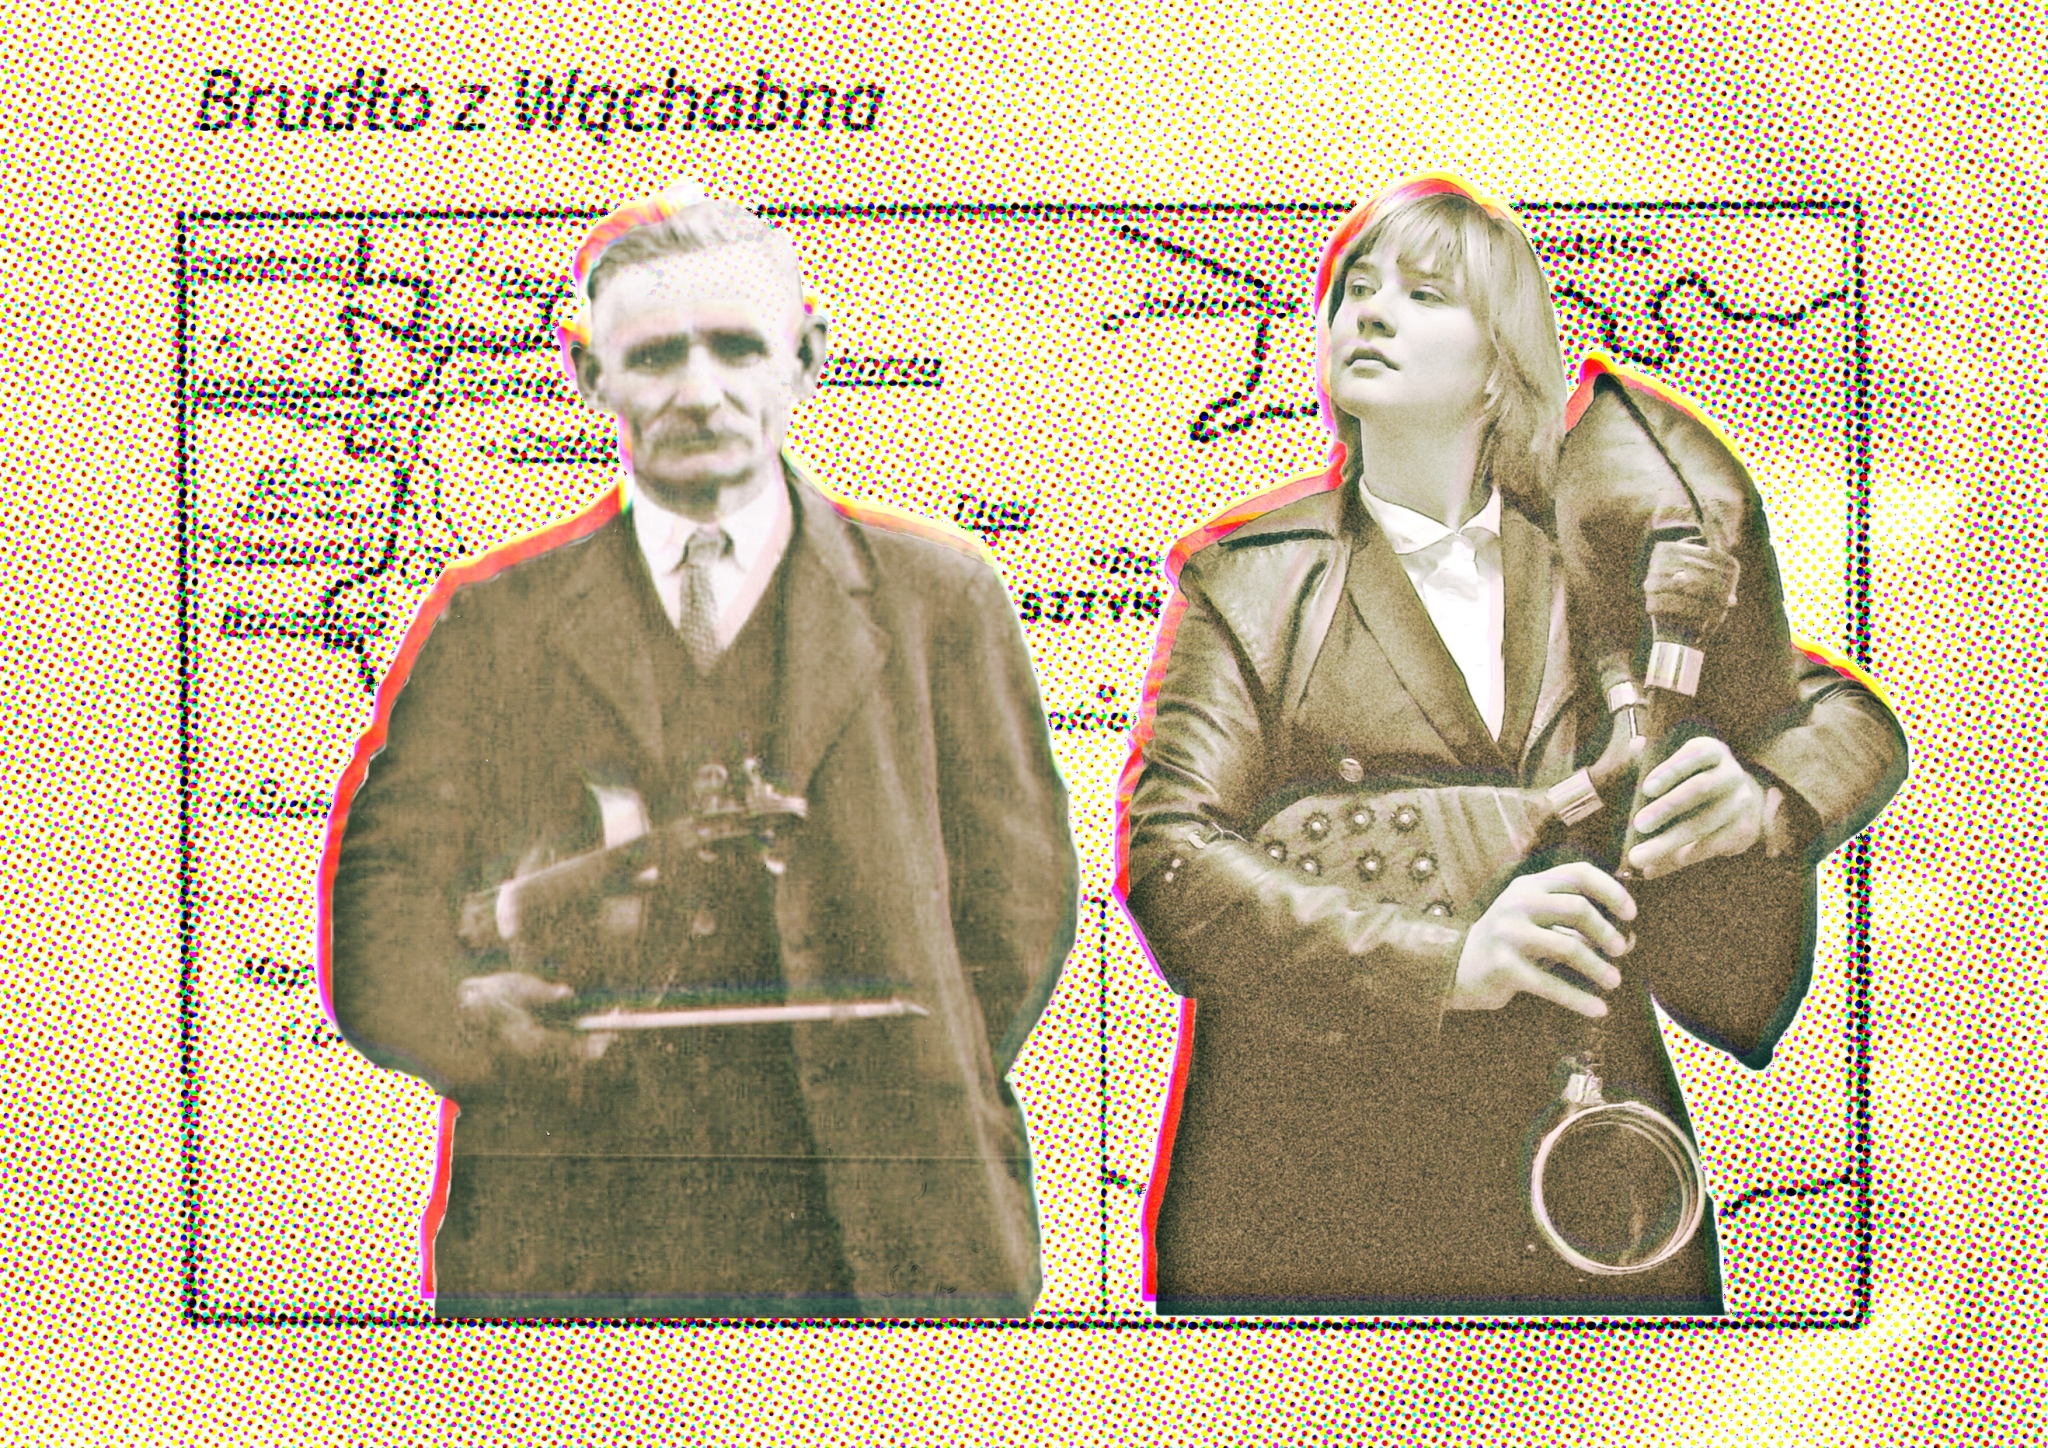 Brudło from Wąchabno - theatre investigation